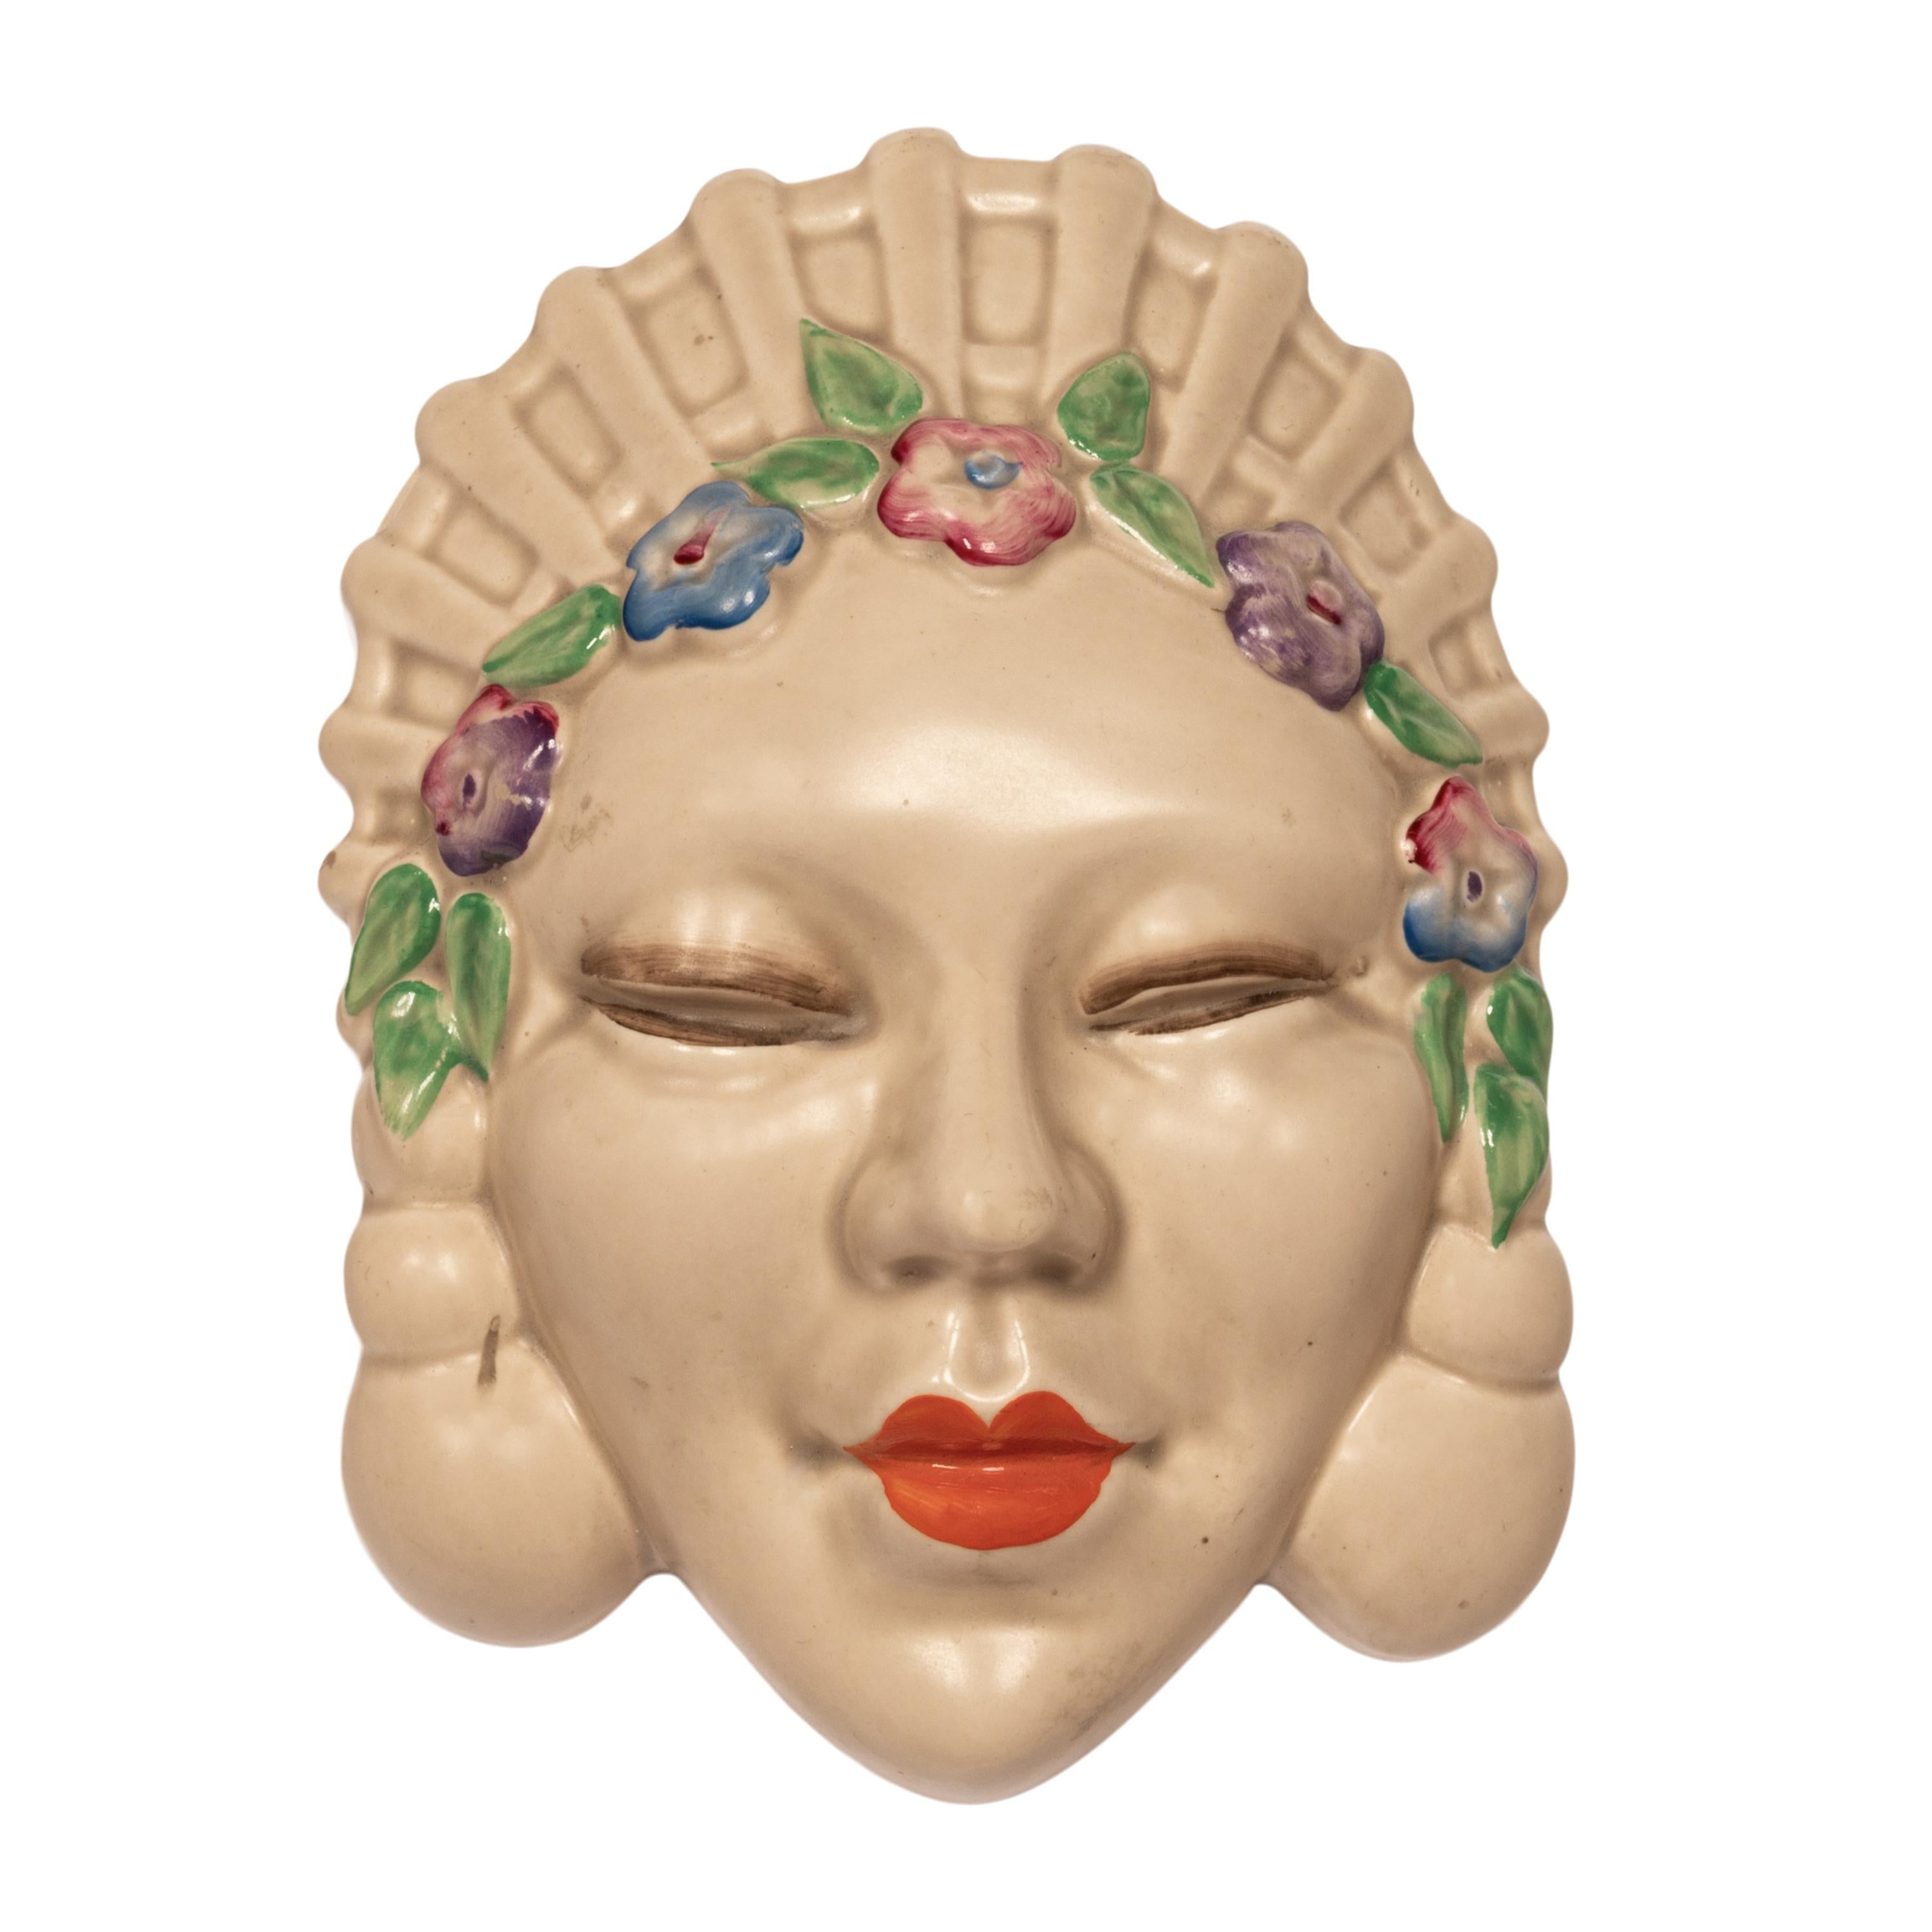 Eine wunderbare Original Art Deco Clarice Cliff Keramik Wandvase, Maske, 1936.
Clarice Cliff war die wohl berühmteste Keramikdesignerin des frühen 20. Jahrhunderts. Vor dem Ersten Weltkrieg begann sie in den Töpfereien von Staffordshire in England